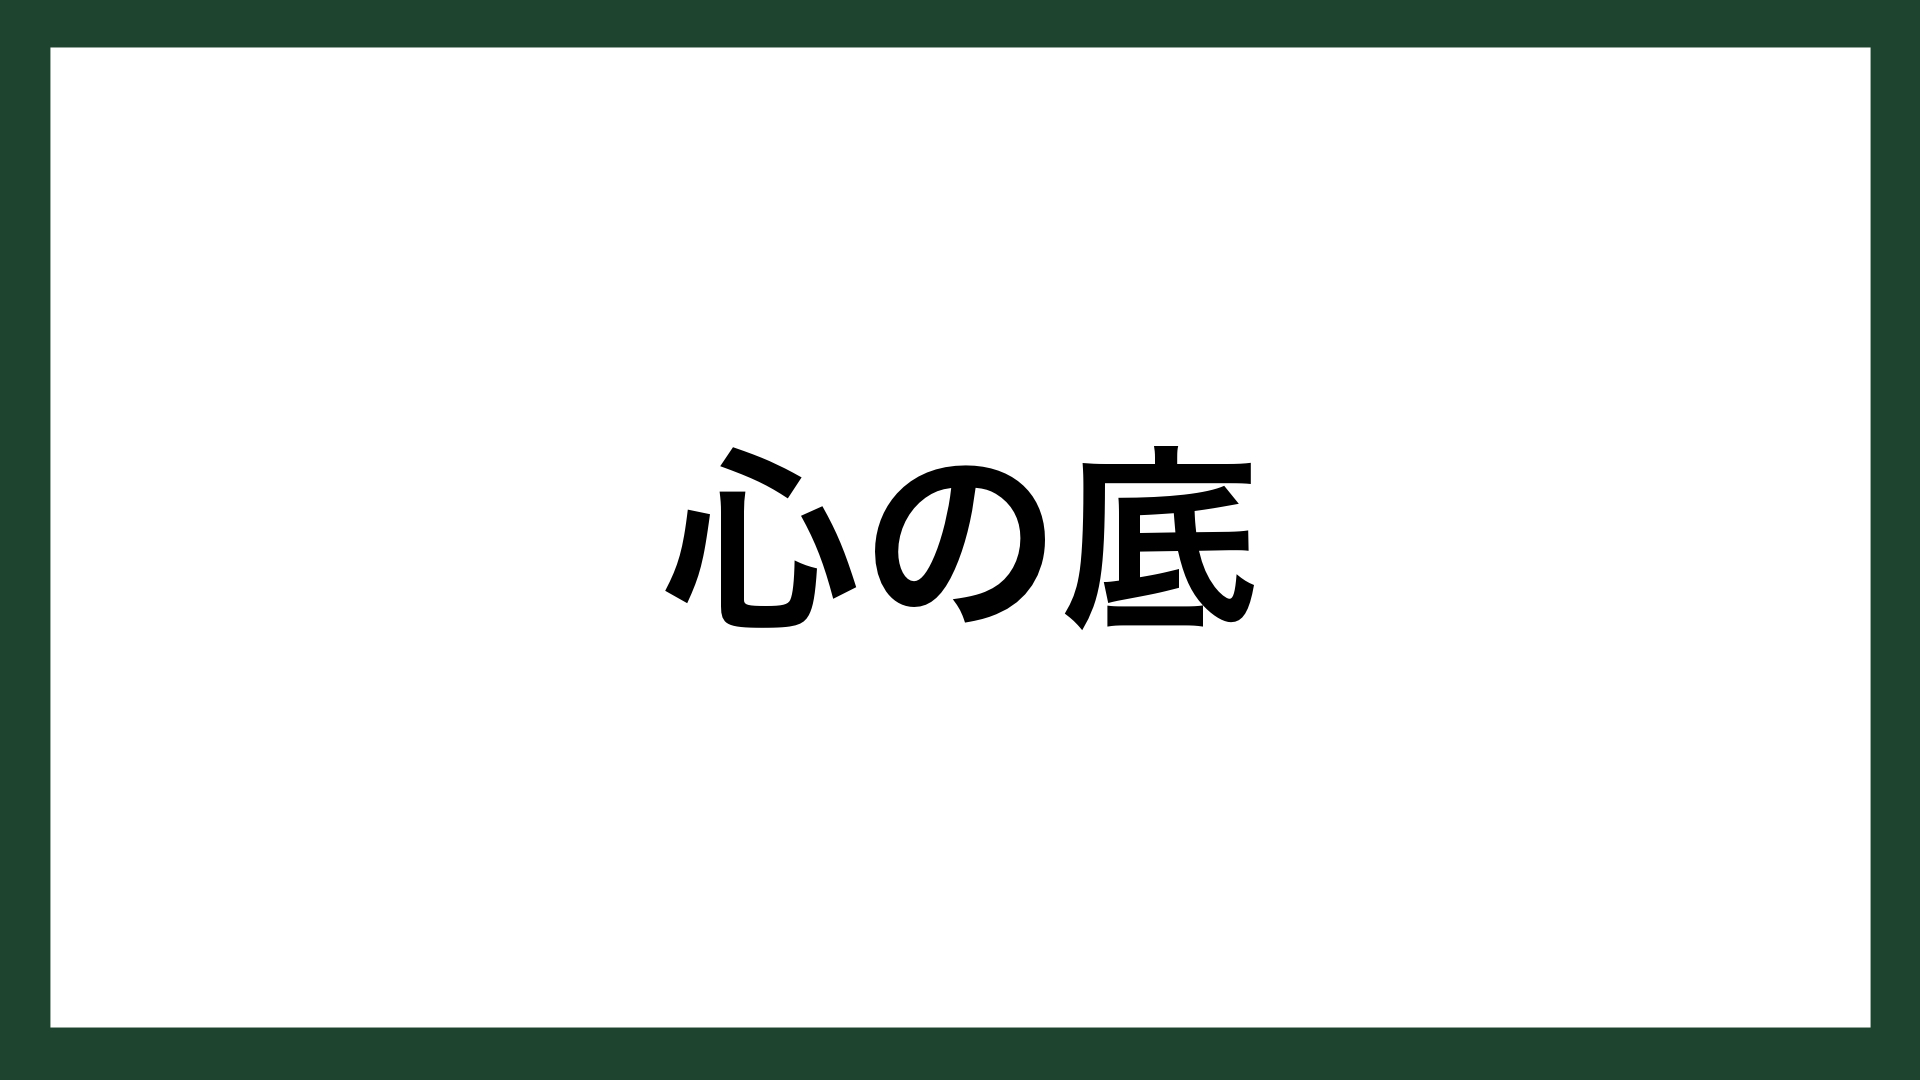 名言 心の底 作家 夏目漱石 スマネコ Blog